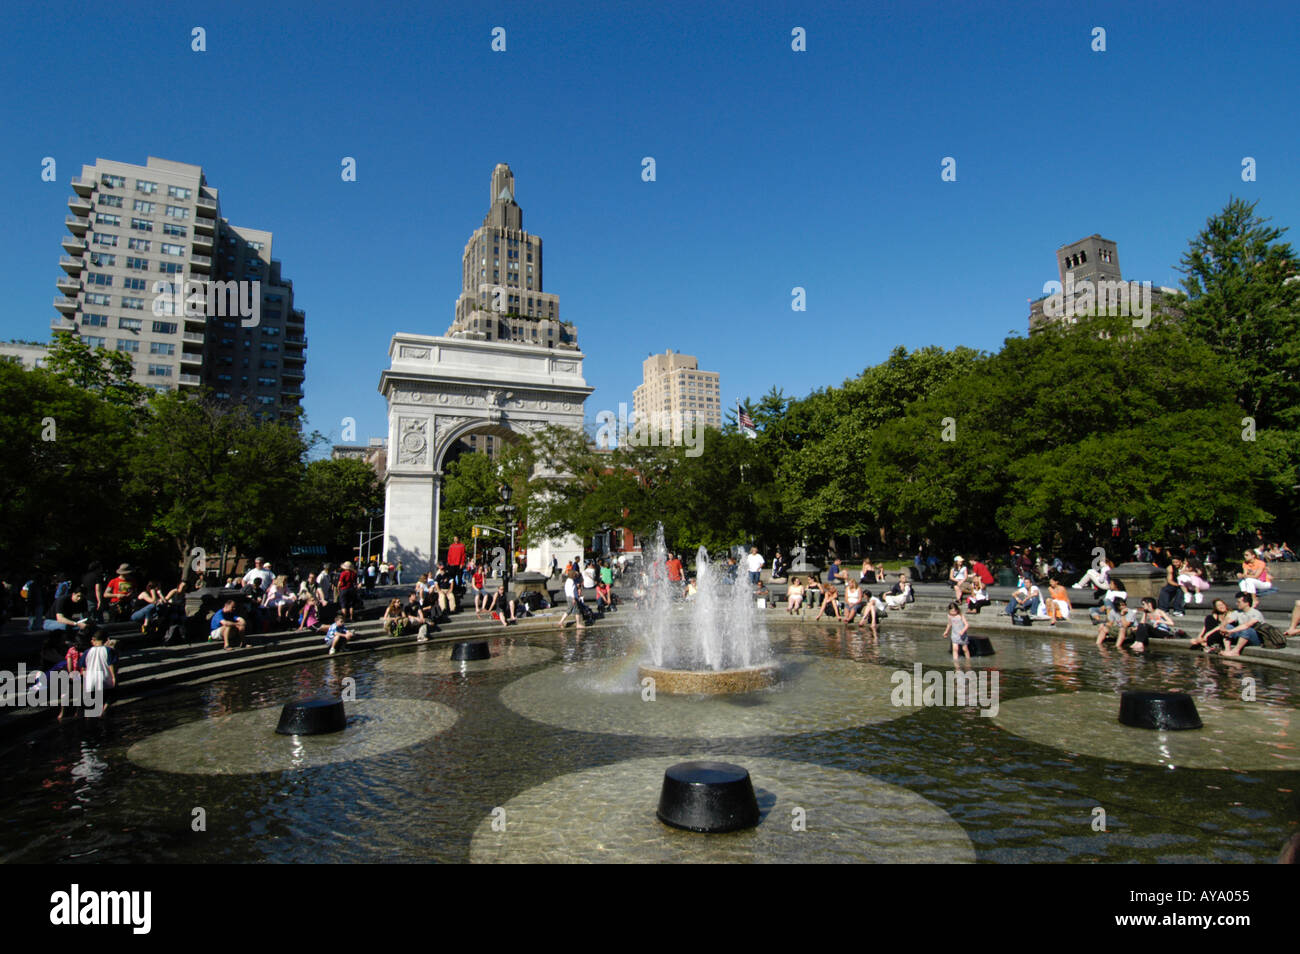 Fontaine à eau à Washington Square Park, New York City USA Banque D'Images